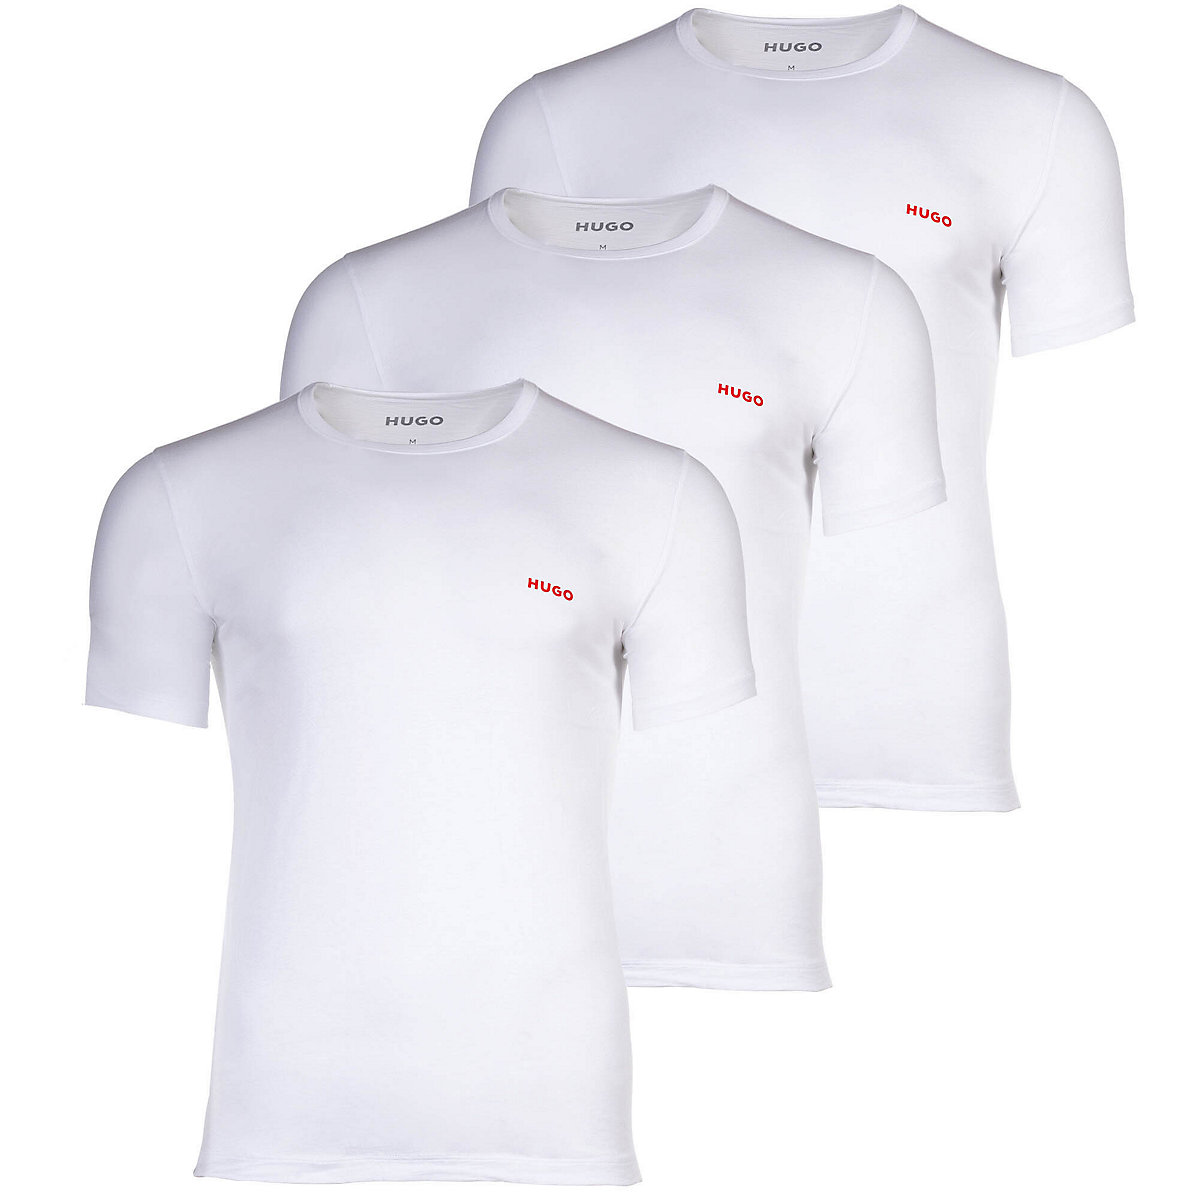 HUGO Herren T-Shirt 3er Pack Rundhals kurzarm Logo Baumwolle uni T-Shirts weiß